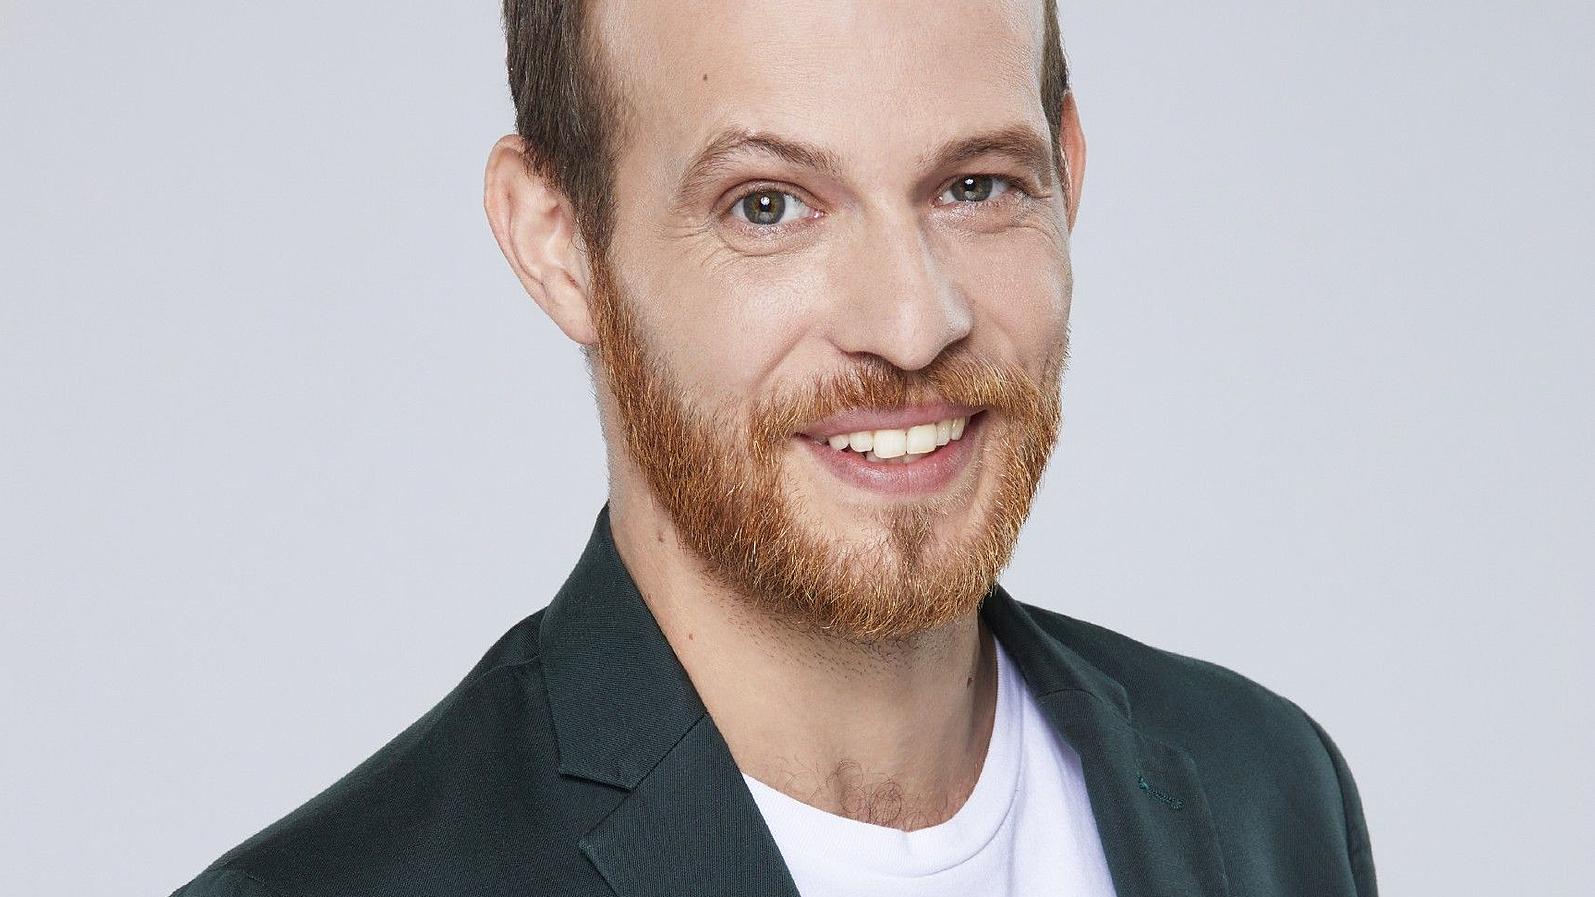 Patrick Müller spielt bei "Unter uns" die Rolle "Tobias Lassner".